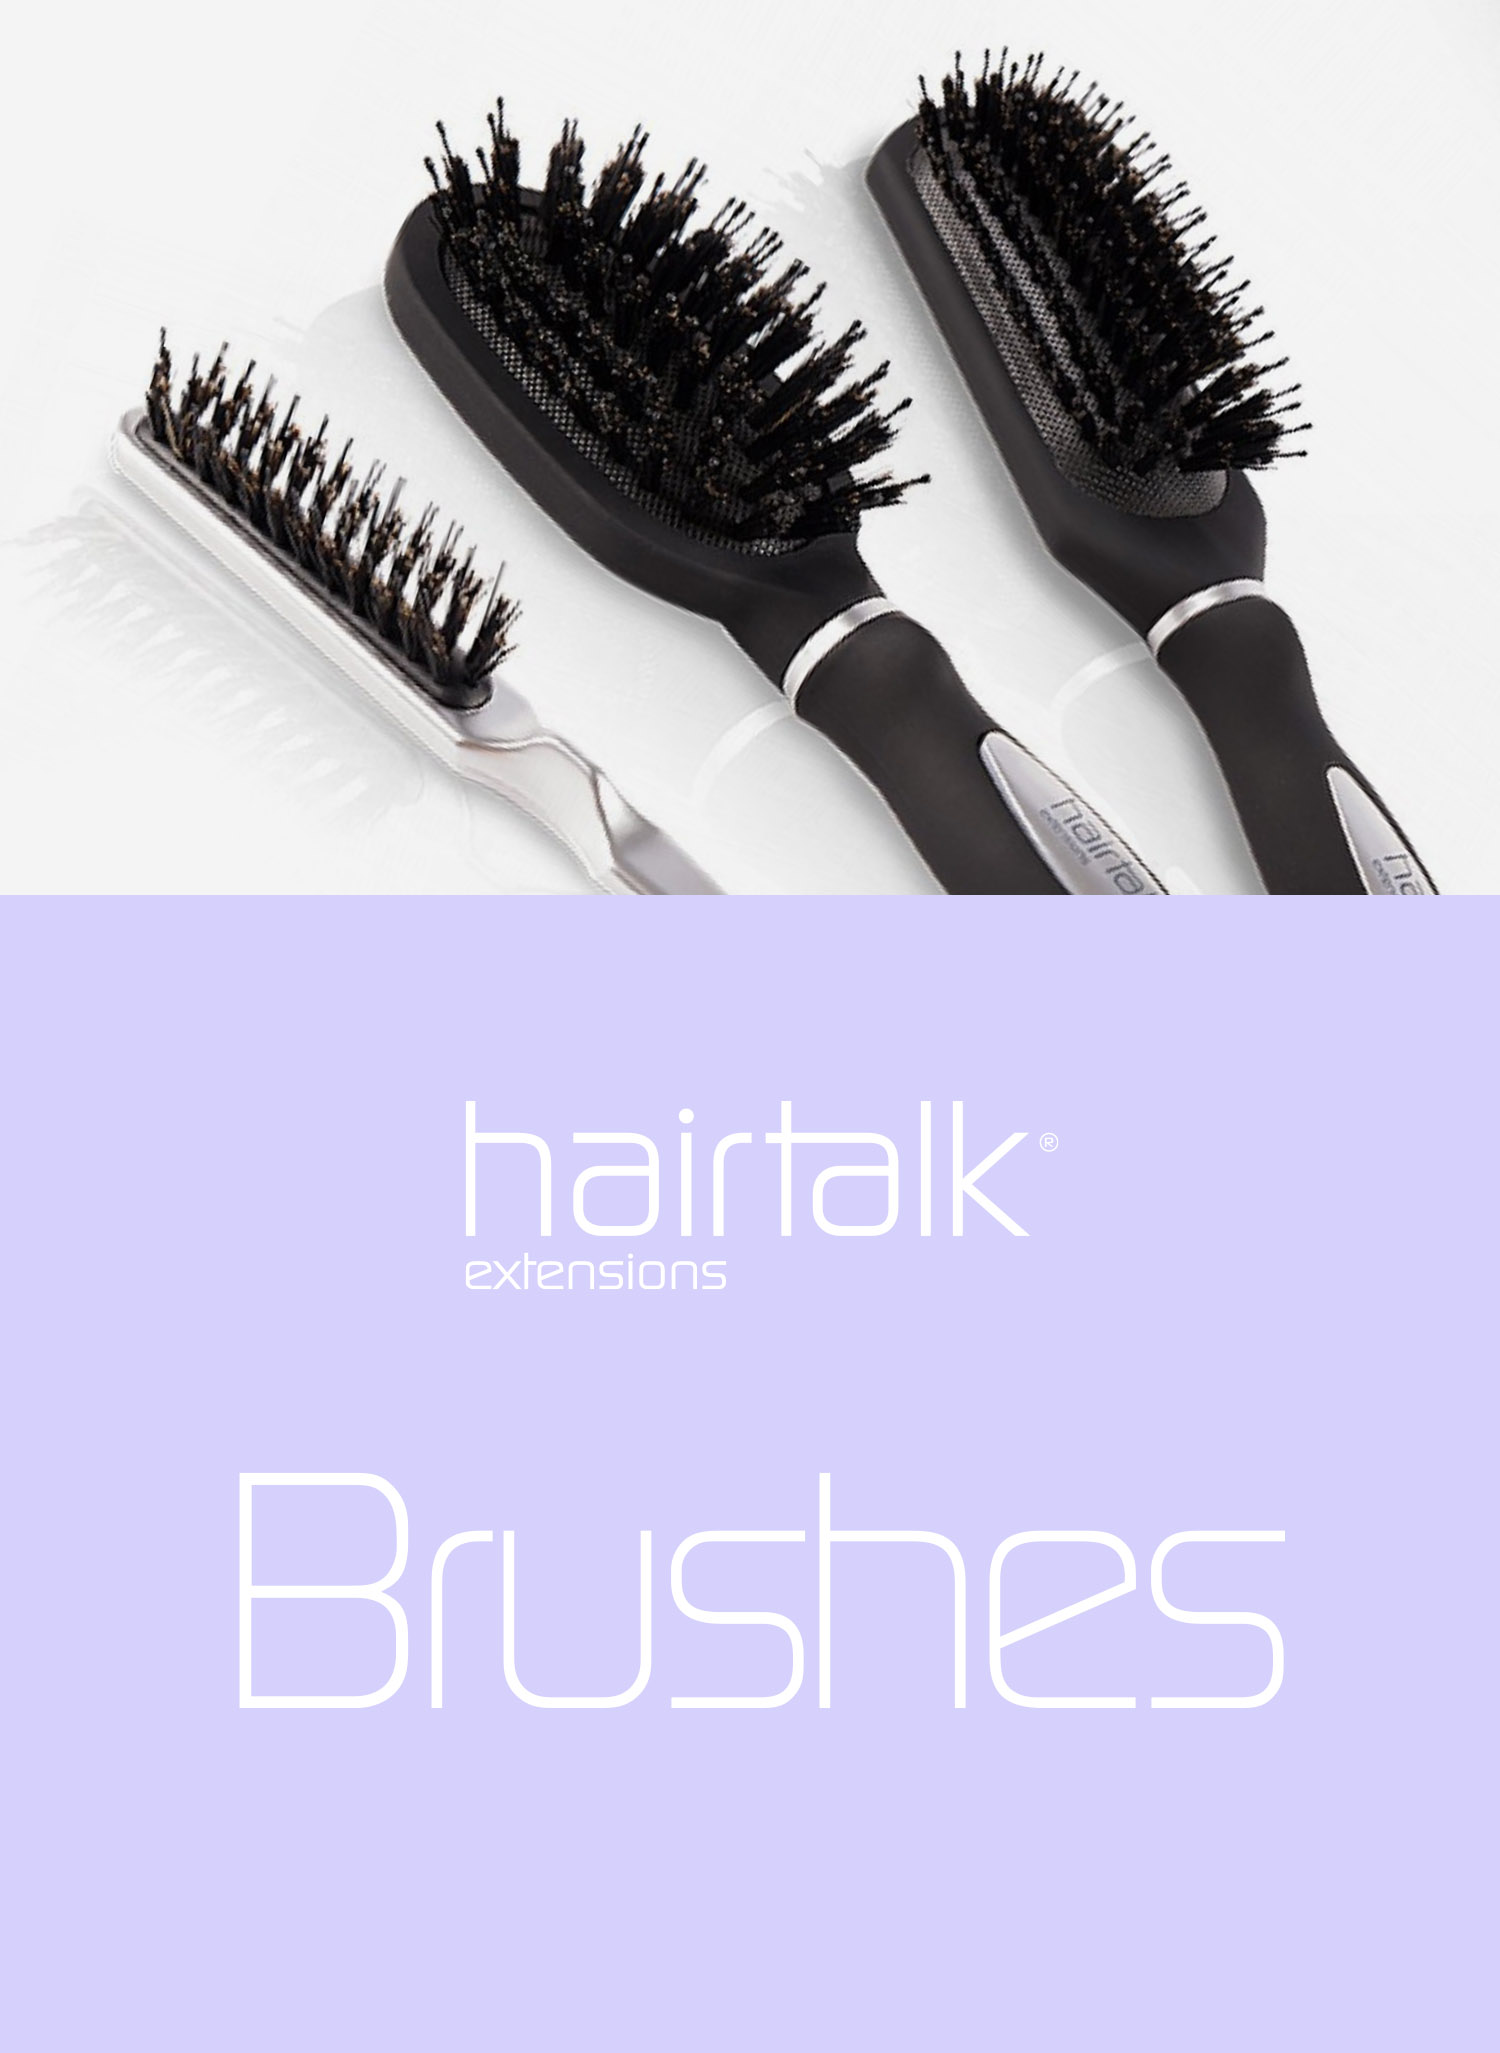 Hairtalk® Brushes - hairtalk® UK